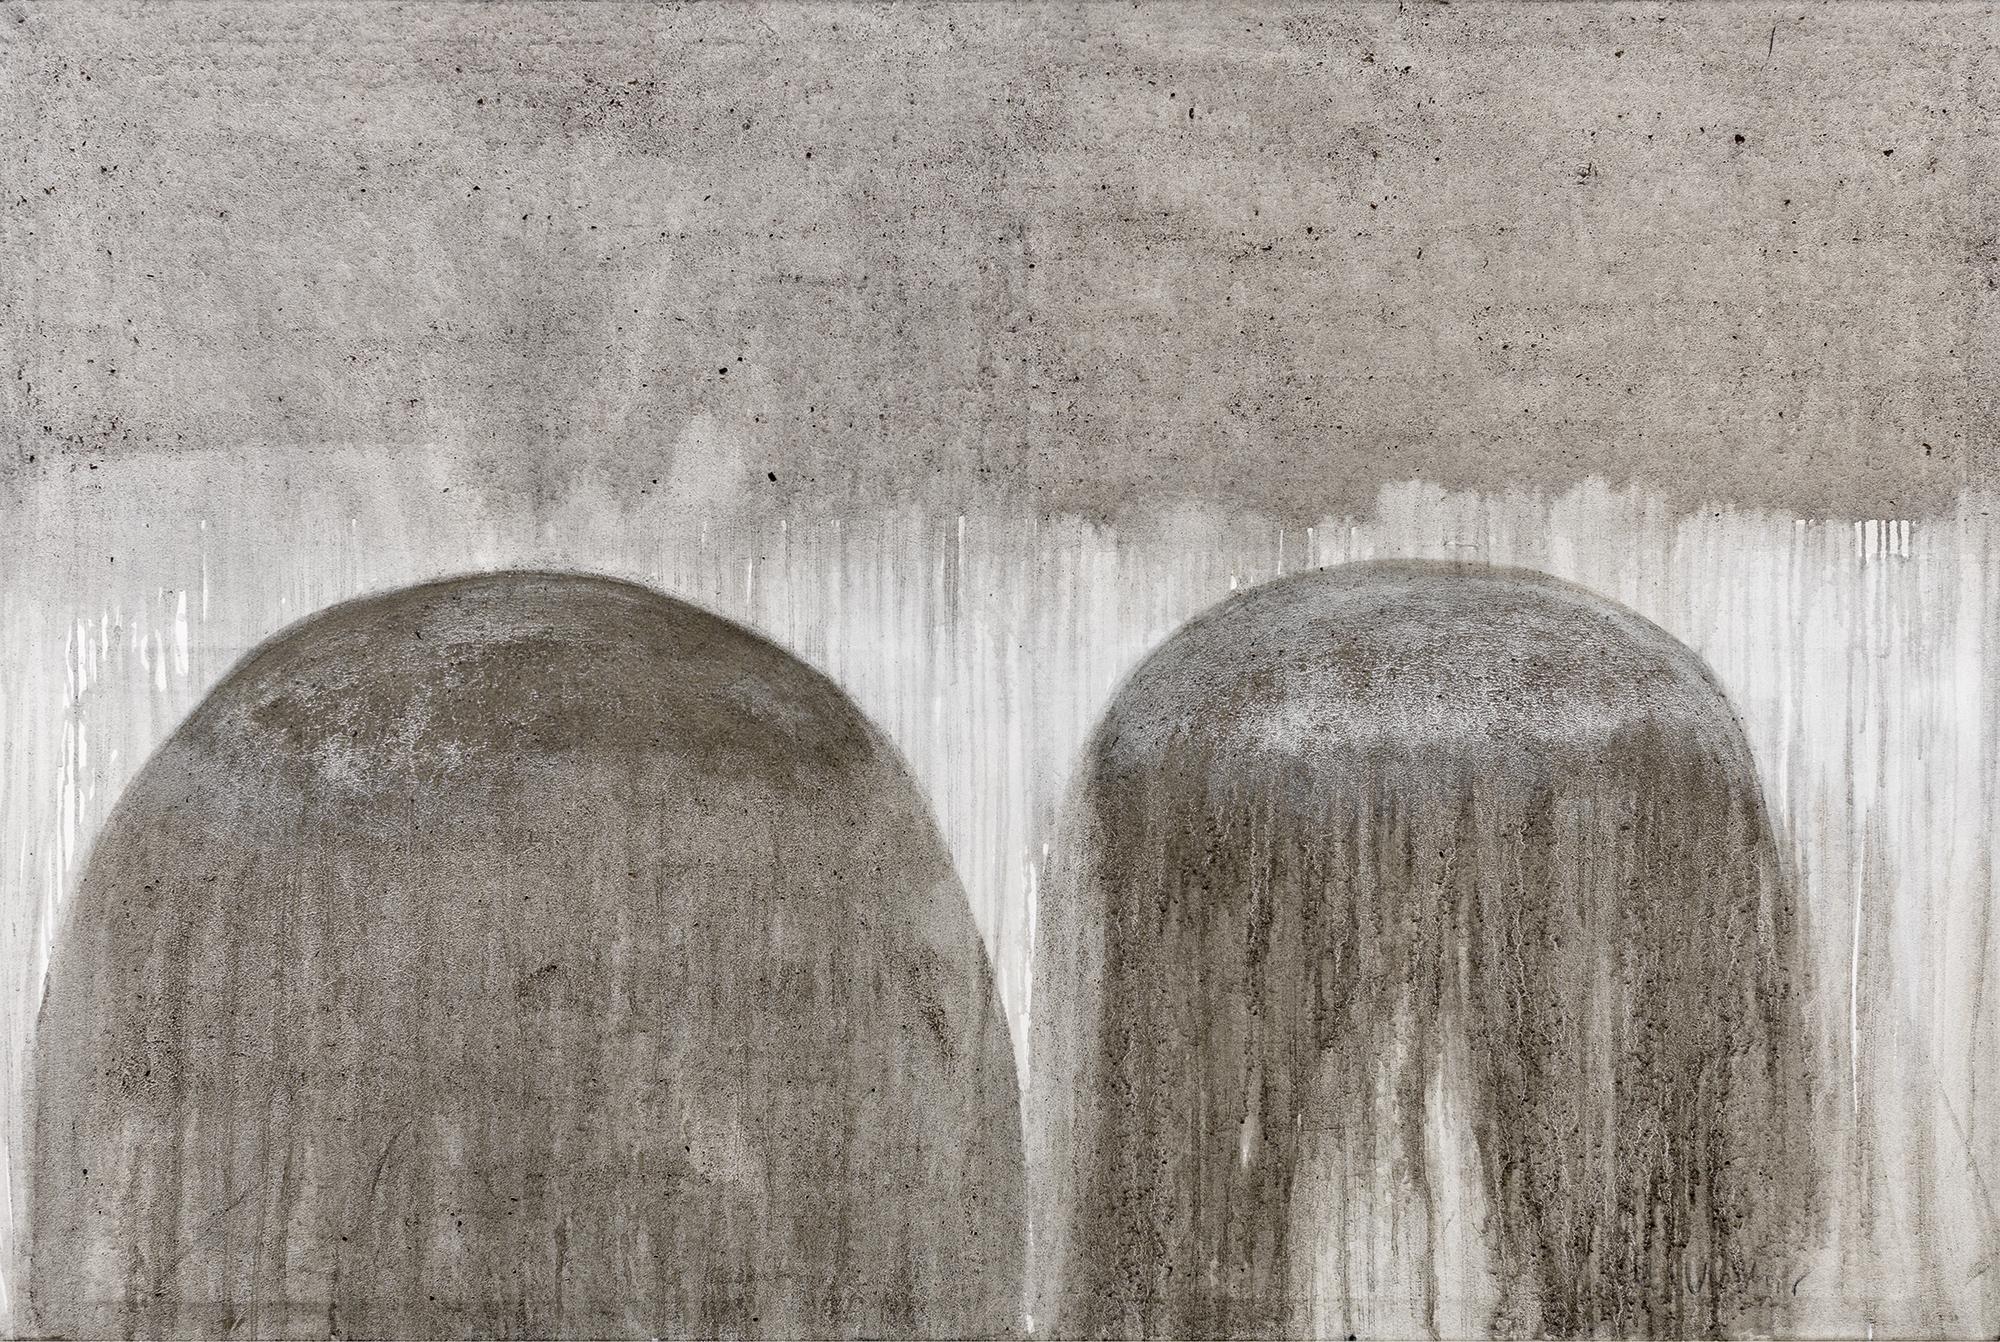 Magnetism // Asche in Eitempera auf Leinwand // 120 x 180 cm // 2014